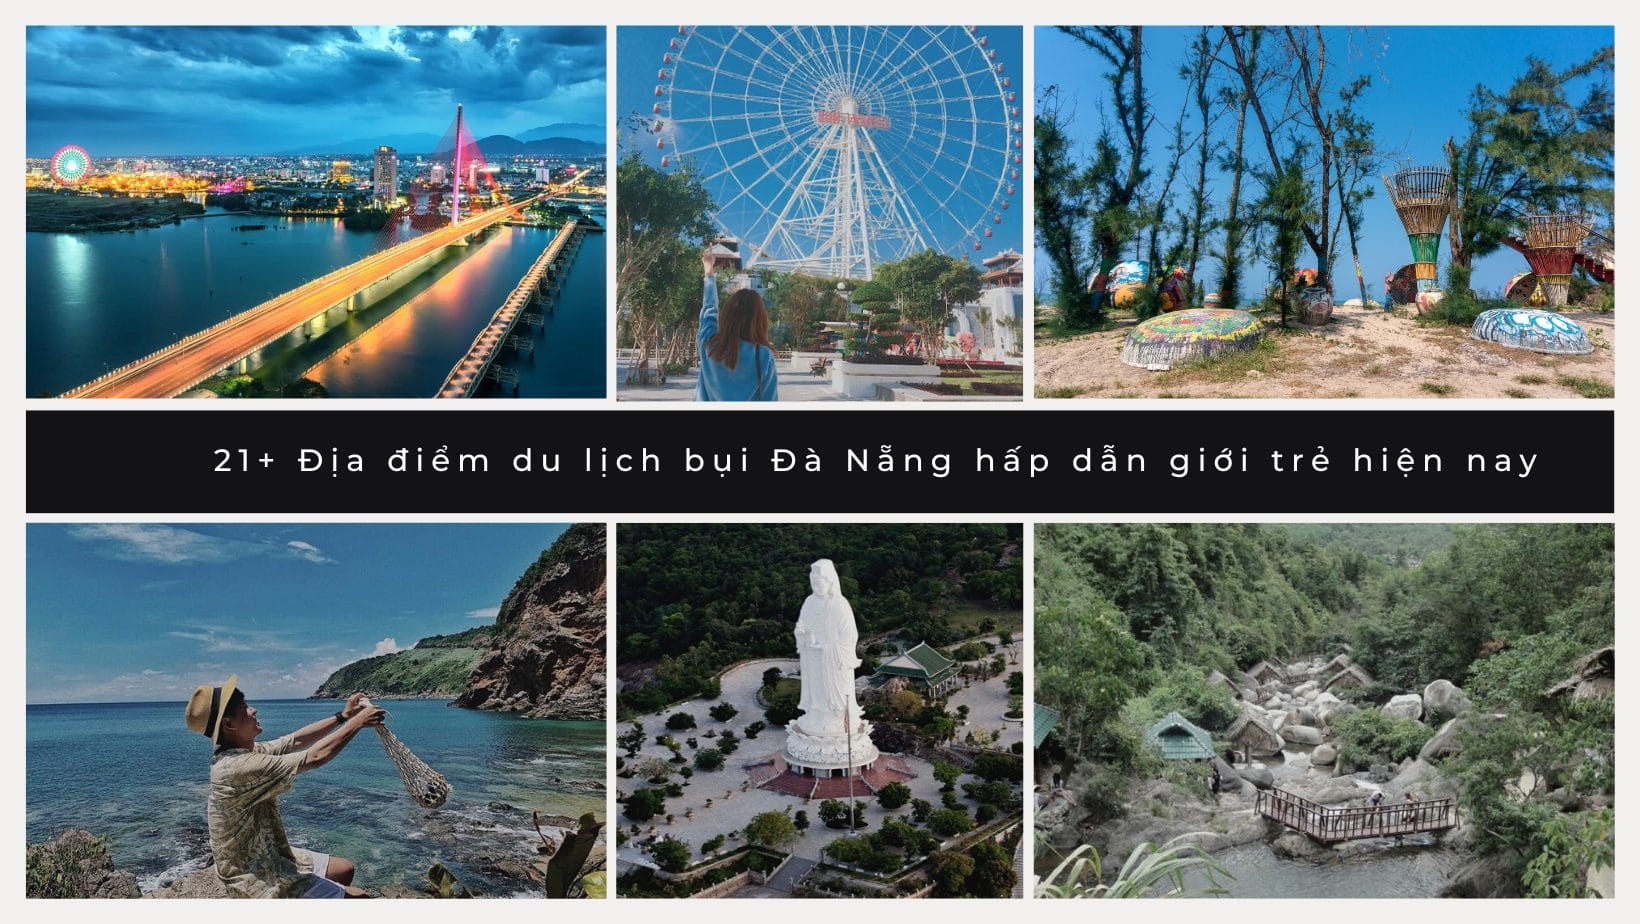 21+ Địa điểm du lịch bụi Đà Nẵng hấp dẫn giới trẻ hiện nay